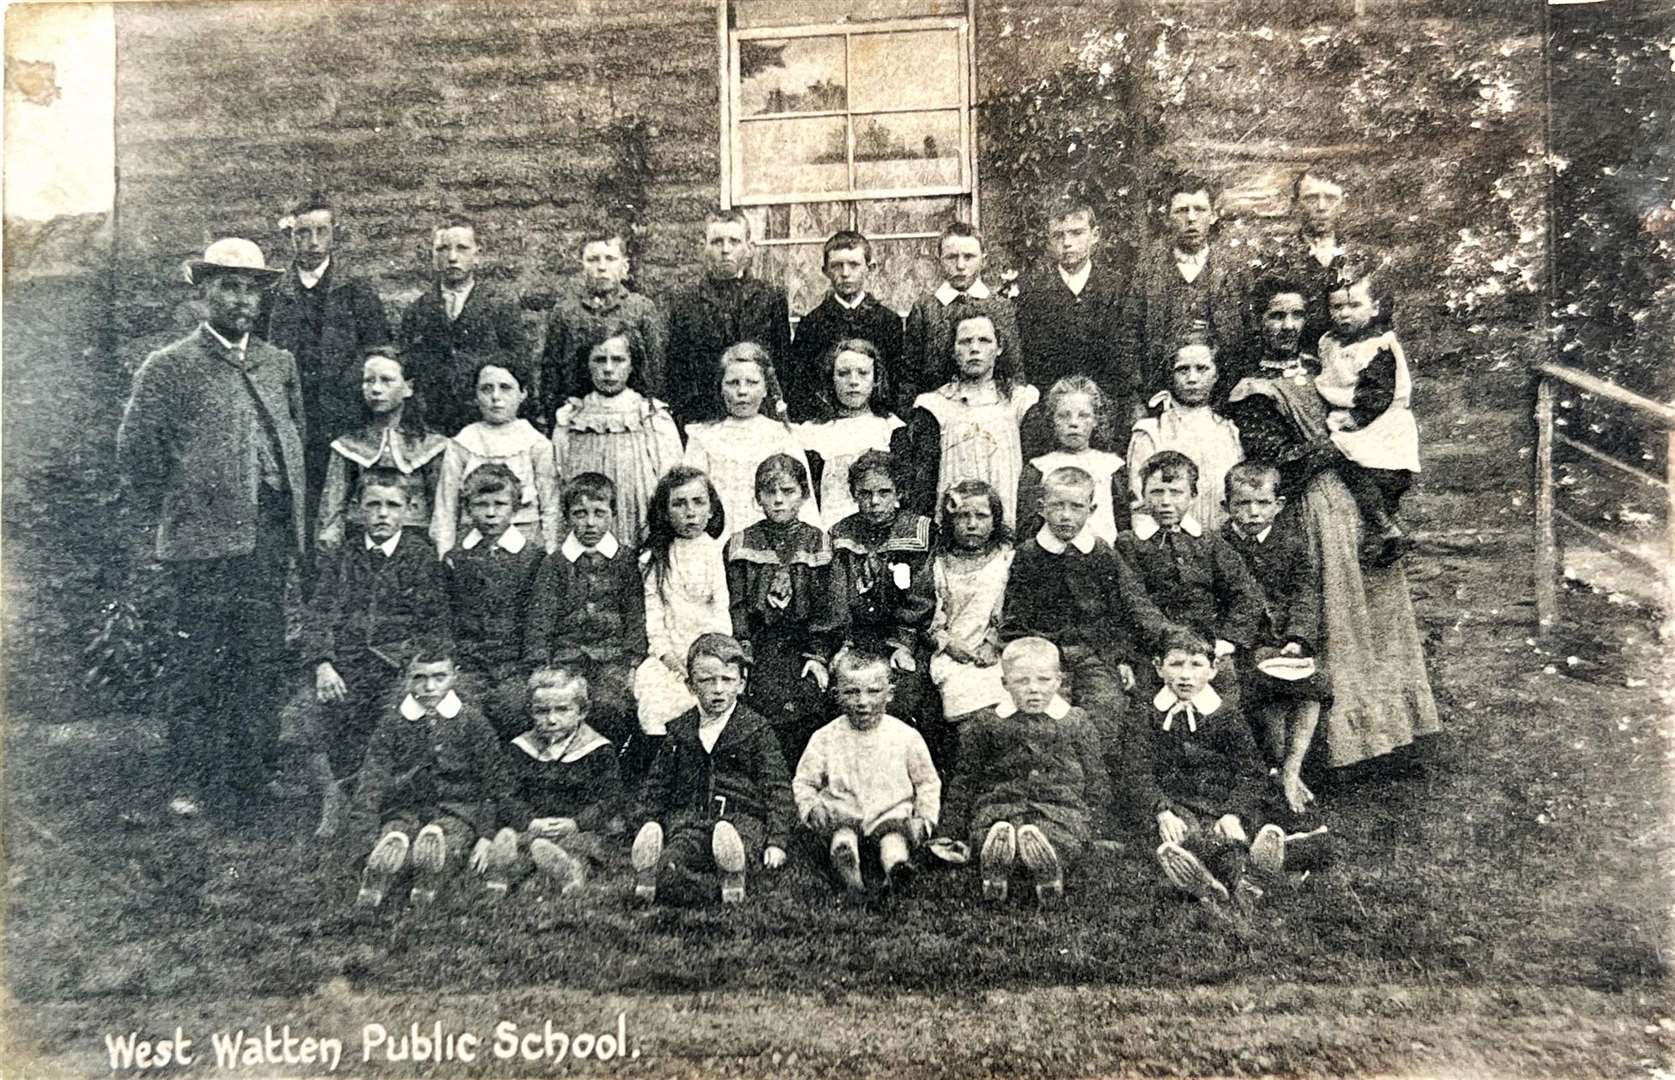 West Watten Public School in 1910.